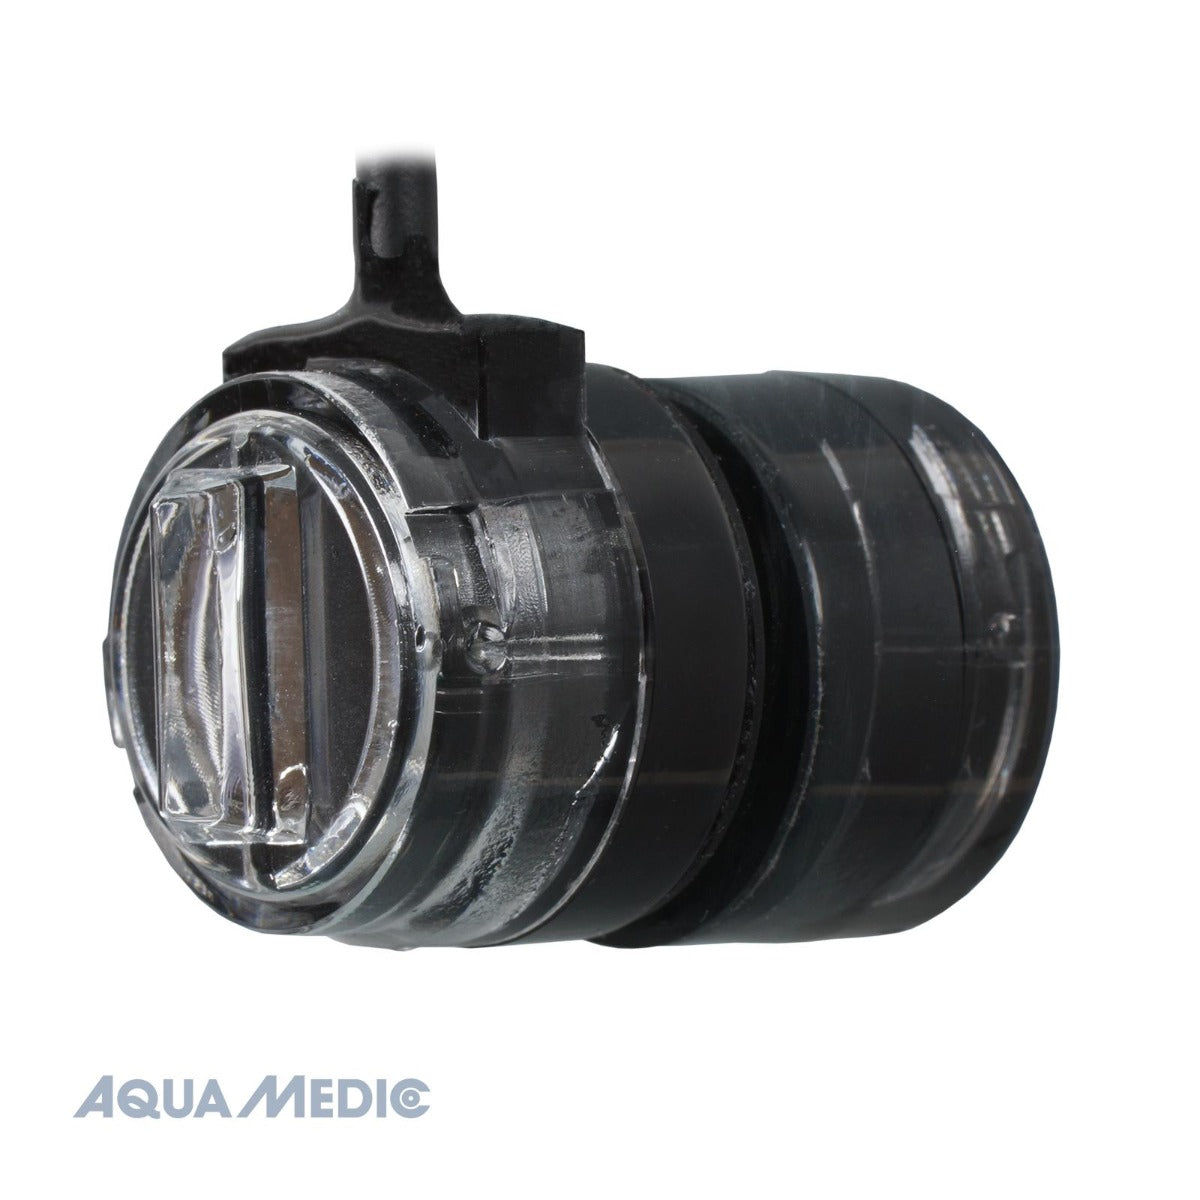 Aqua Medic Refill System easy